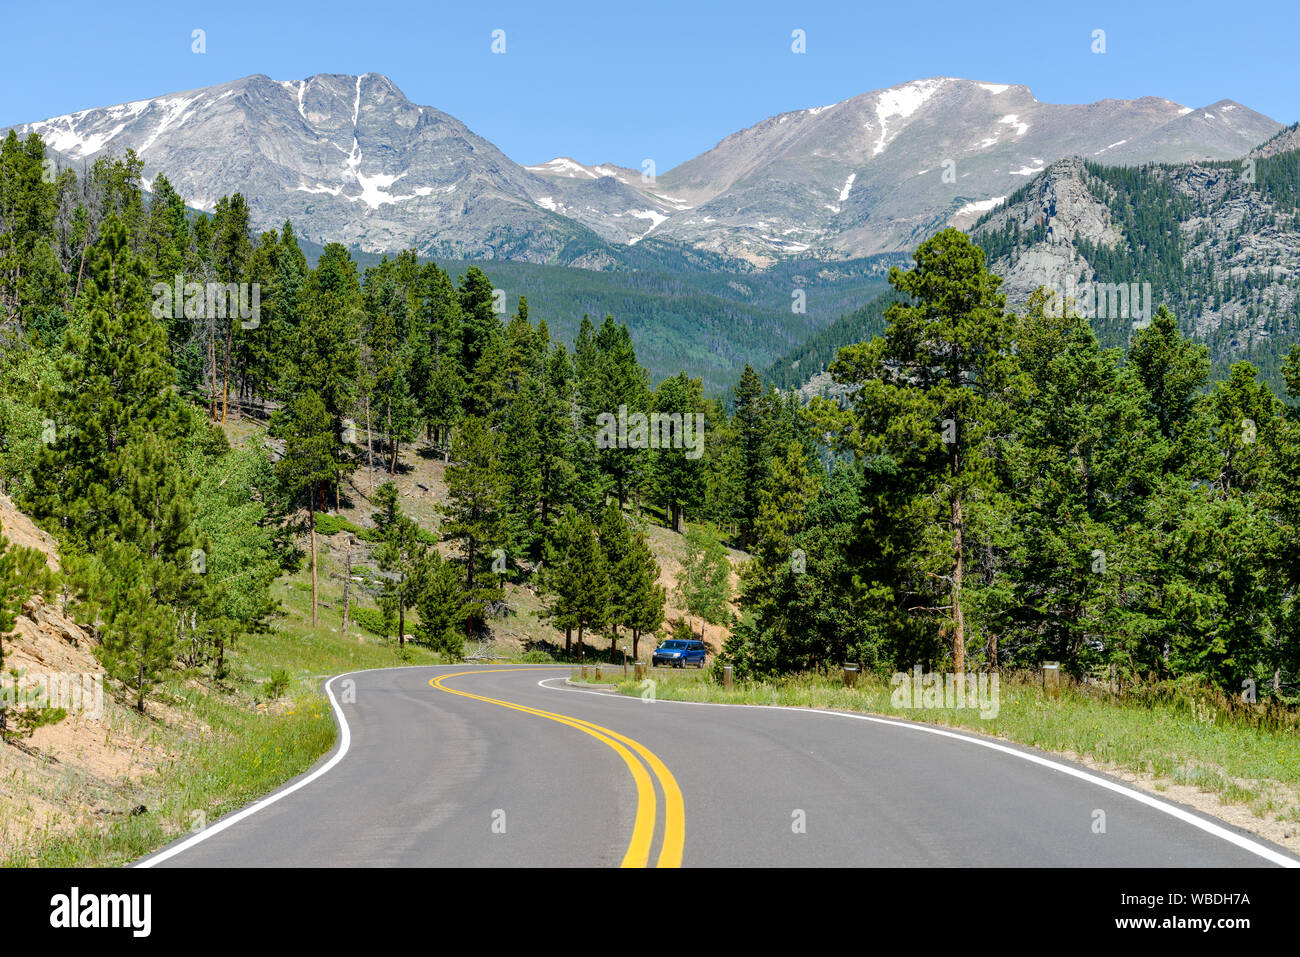 Route de montagne d'été - une vue d'été de l'enroulement de Fall River Road, avec de hauts sommets imposants gamme maman en arrière-plan, Rocky Mountain National Park. Banque D'Images